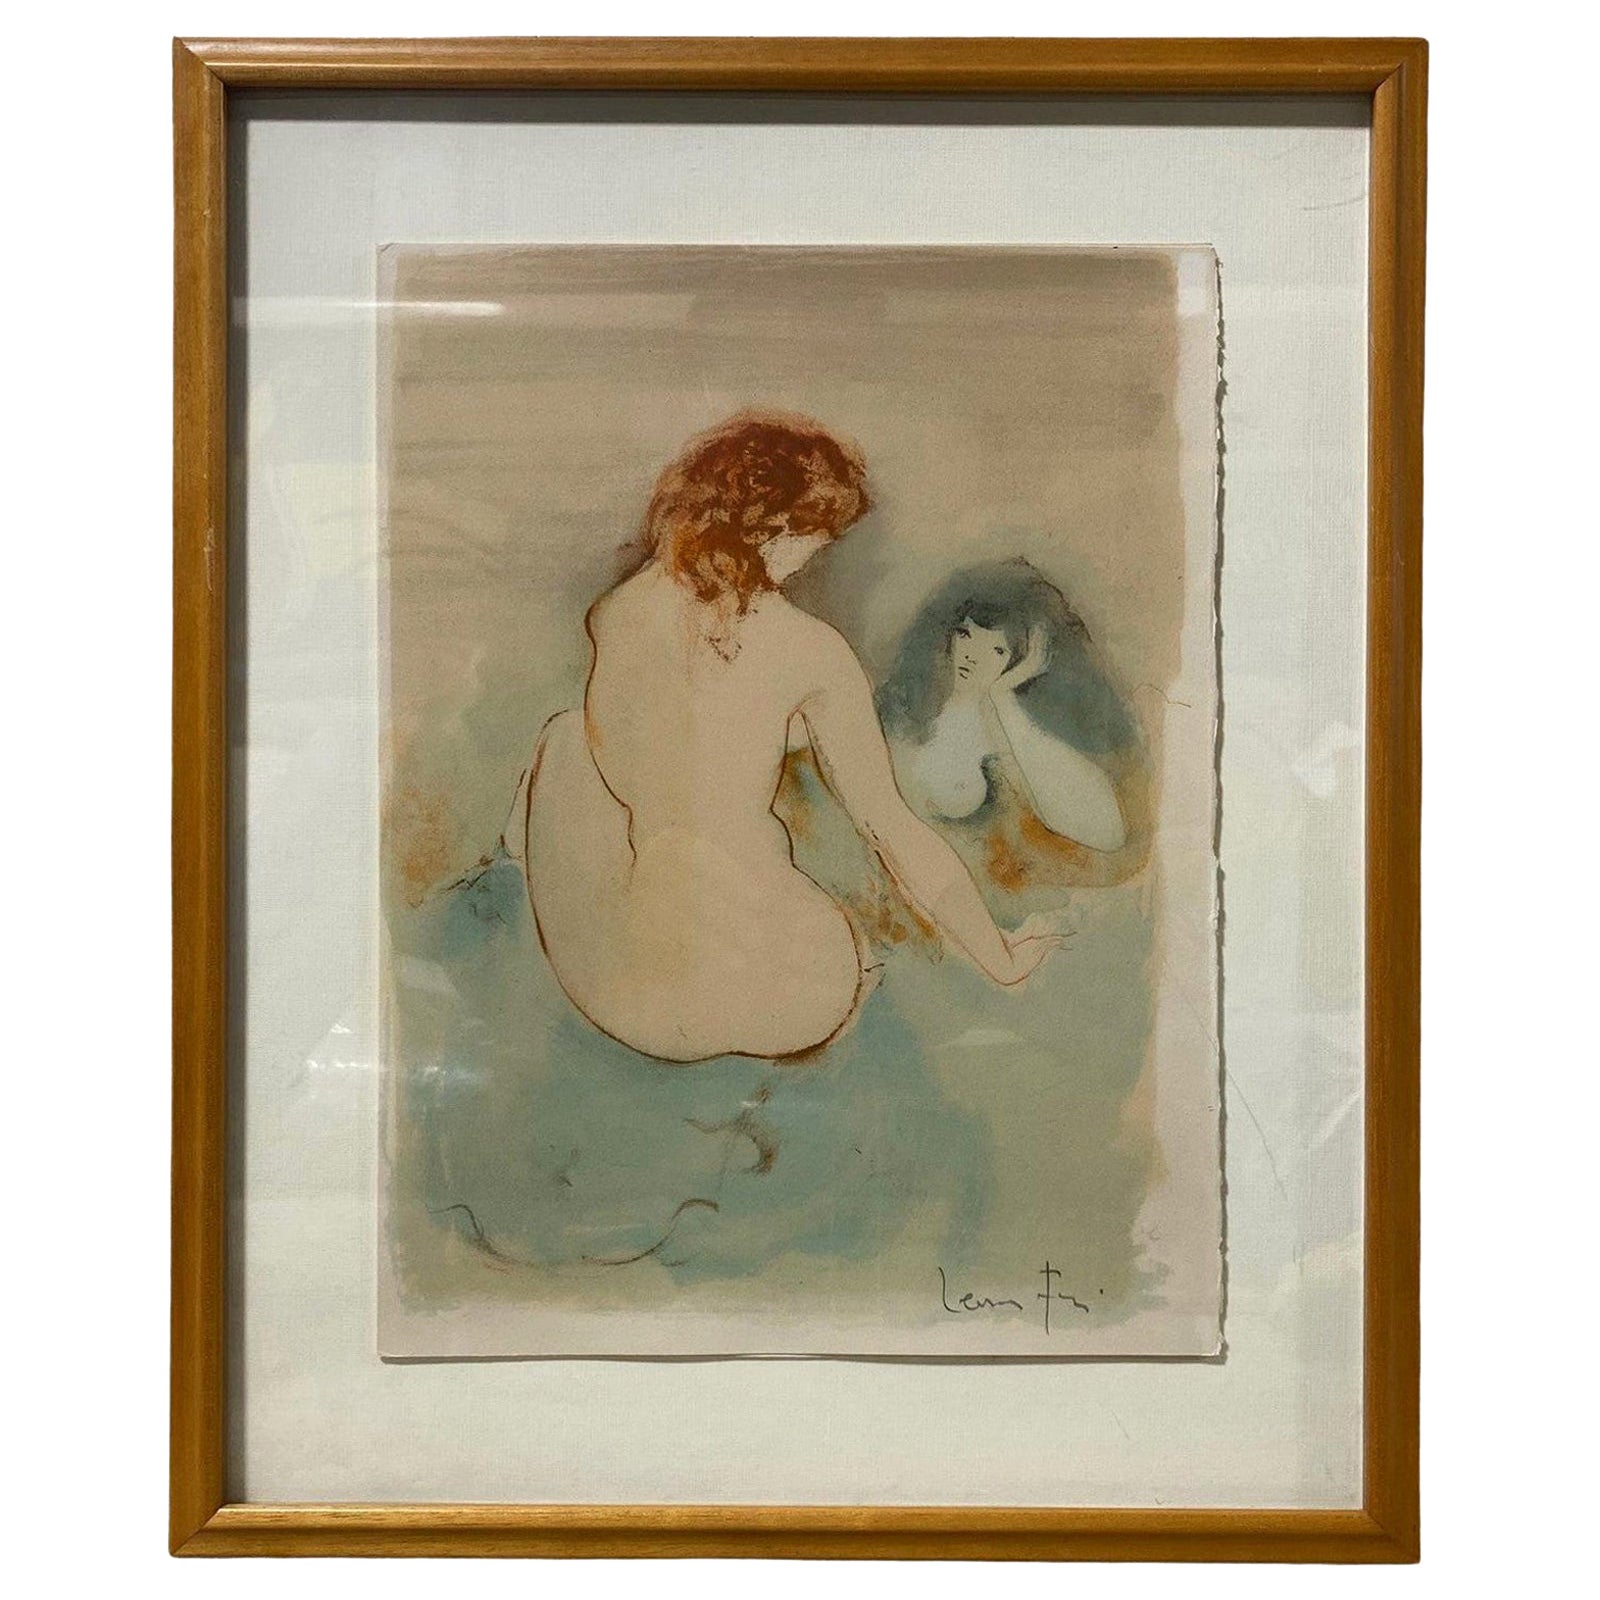  Magnifique lithographie encadrée « Deux Femmes » signée Leonor Fini, vers 1970